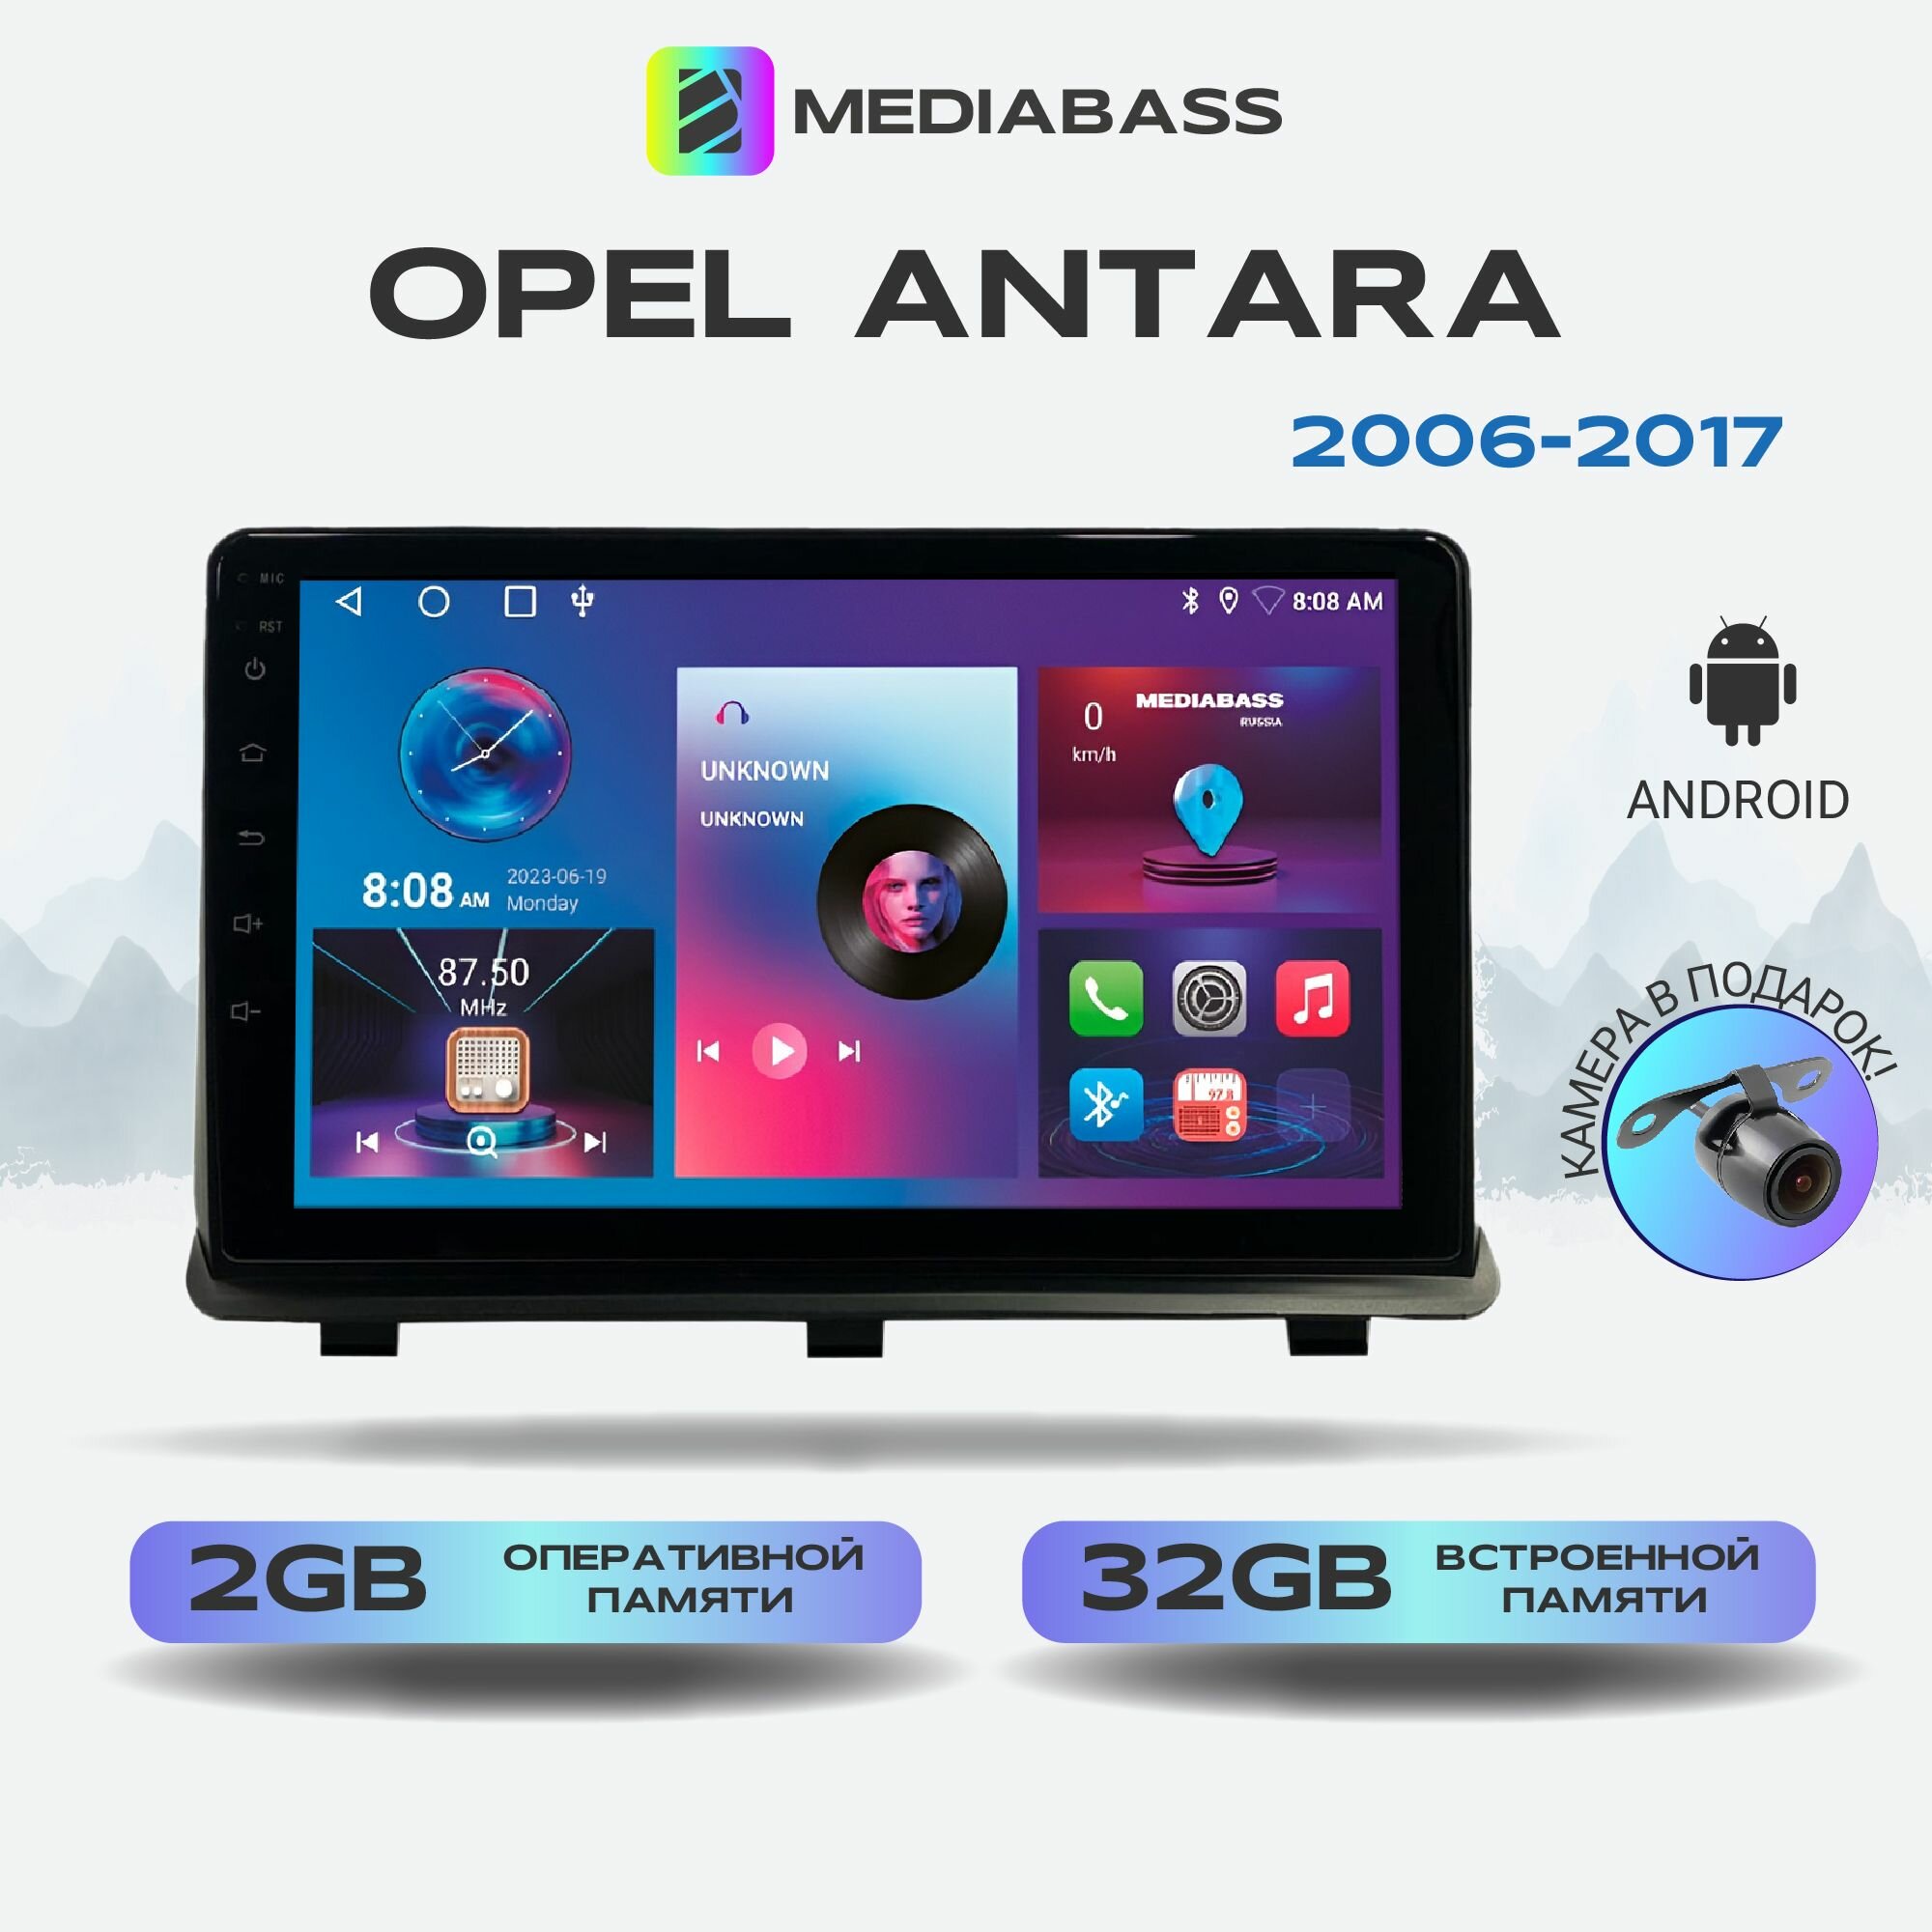 Автомагнитола Mediabass Opel Antara Опель Антара 2006-2017, Android 12, 2/32ГБ, 4-ядерный процессор, QLED экран с разрешением 1280*720, чип-усилитель YD7388, планшет / Опель Антара